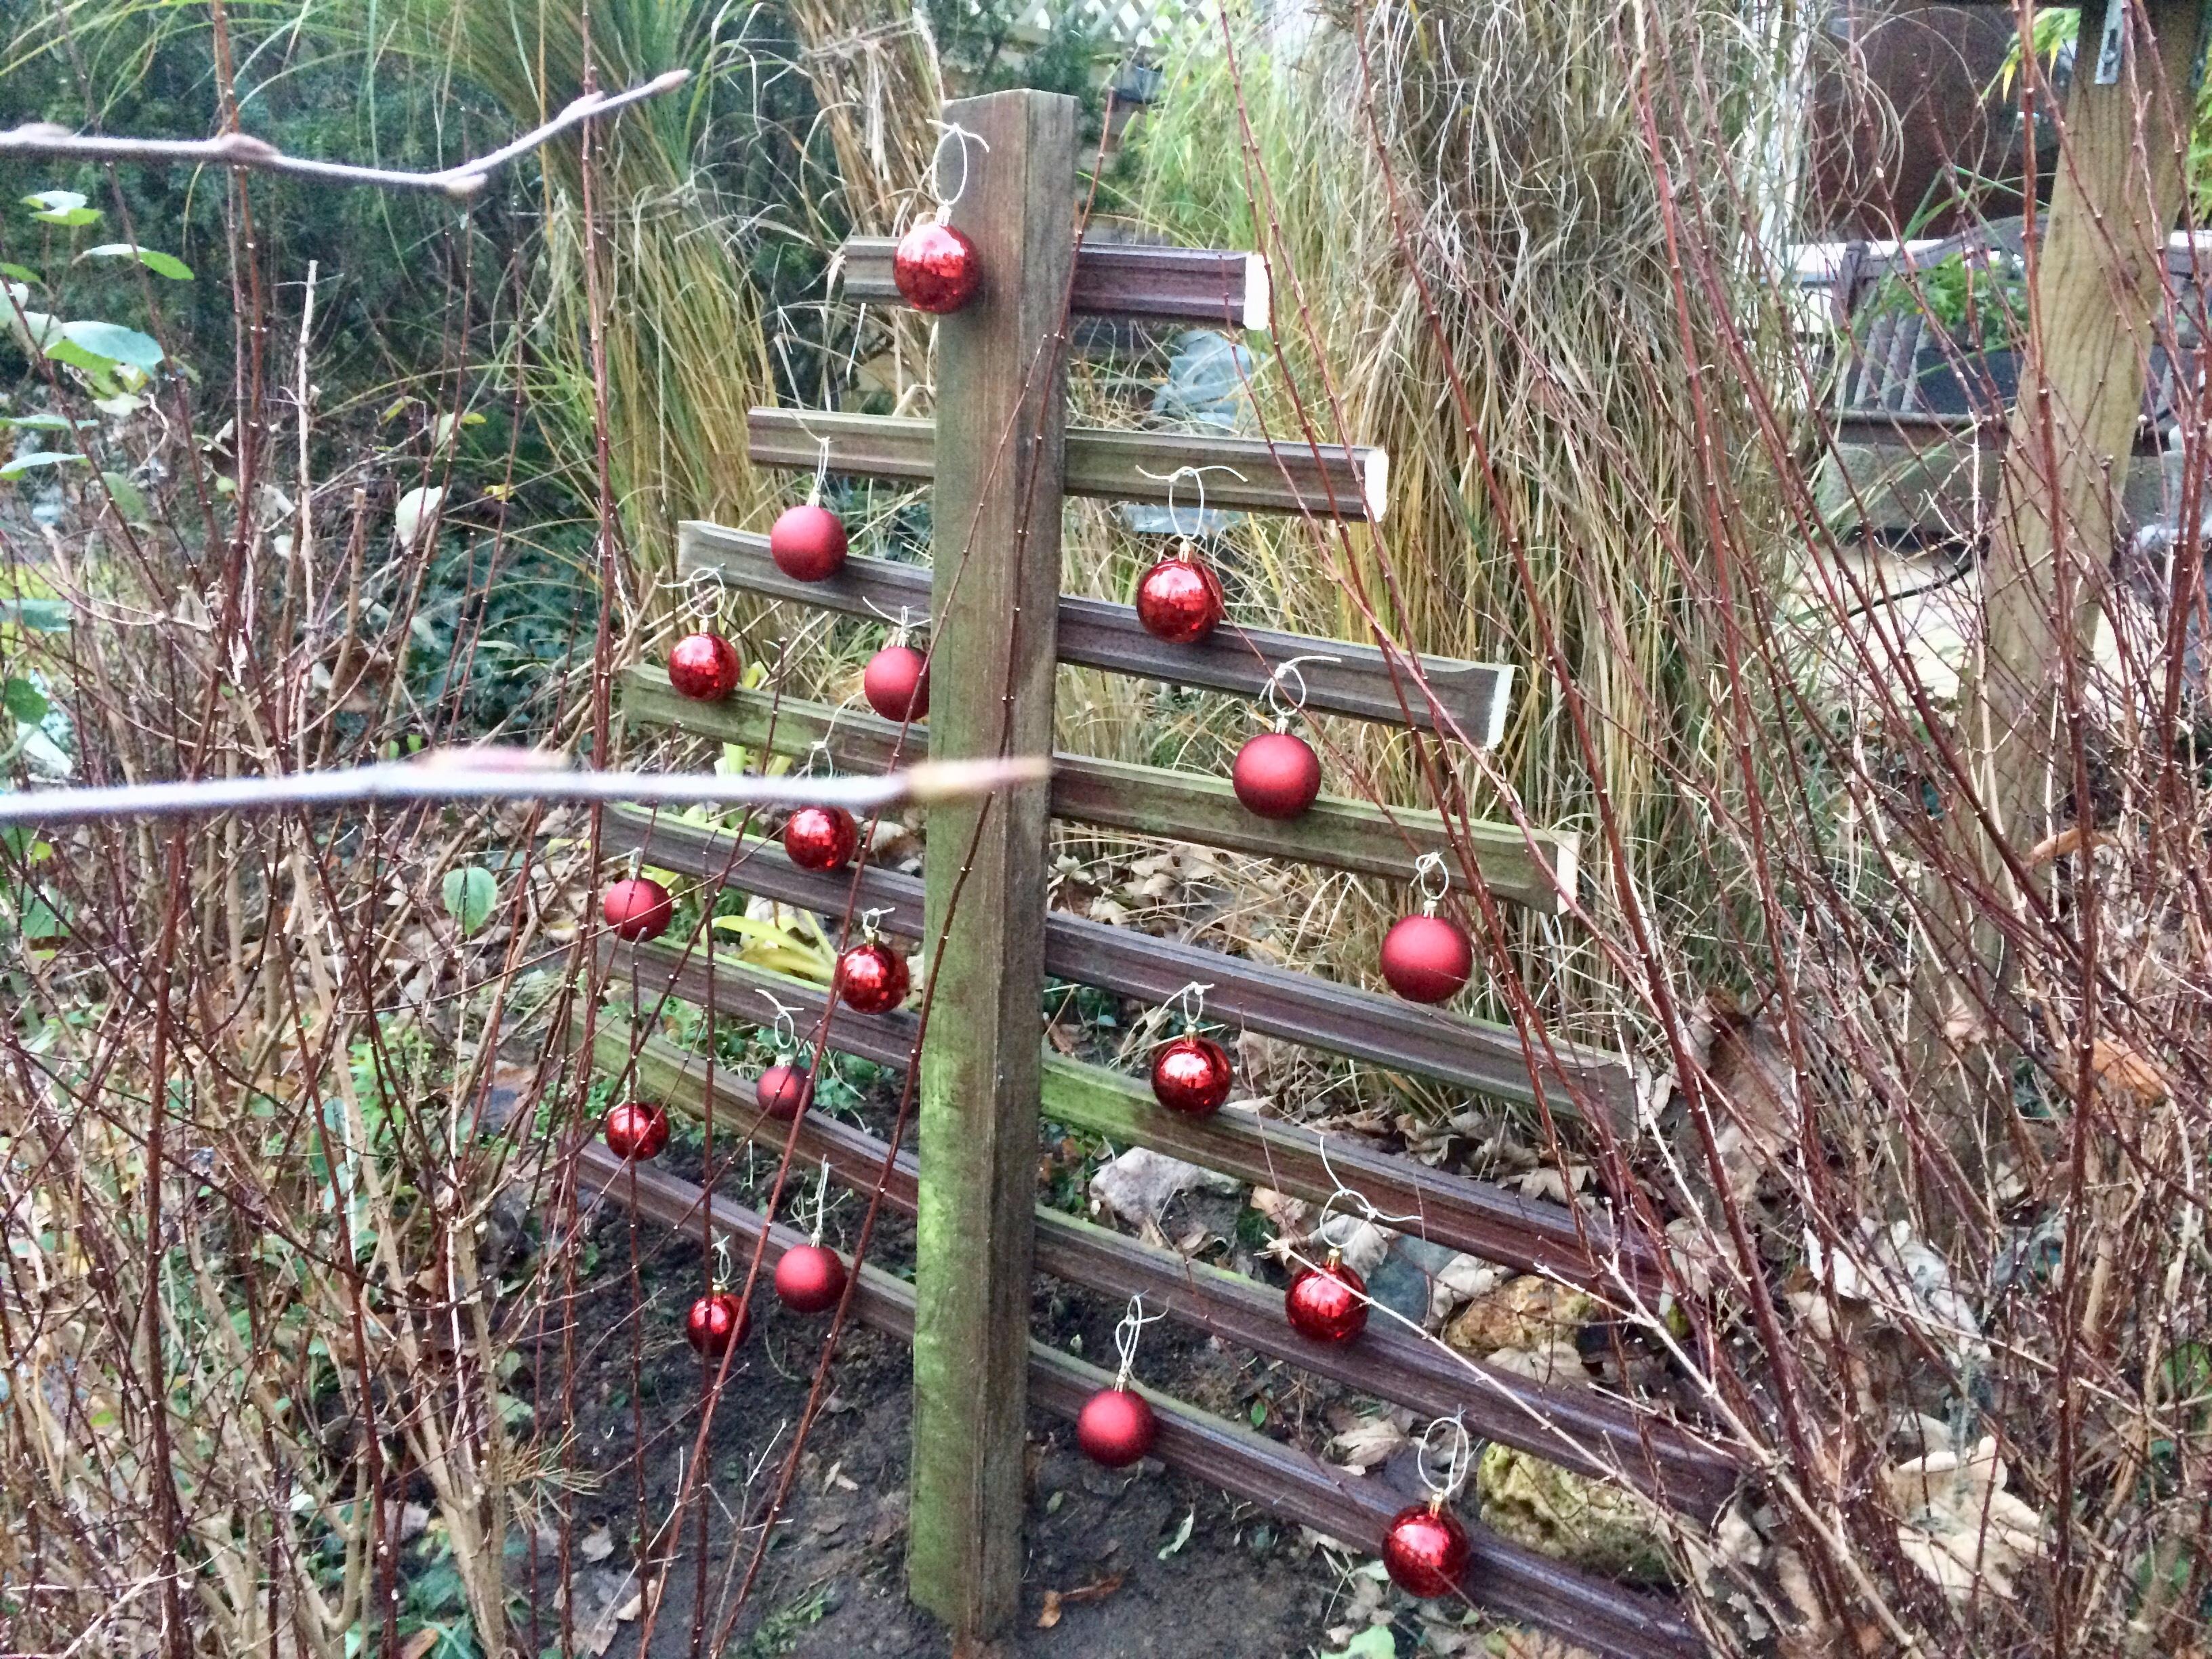 #Weihnachtsbaum#Garten 
Aus einem Gartentor gesägt!